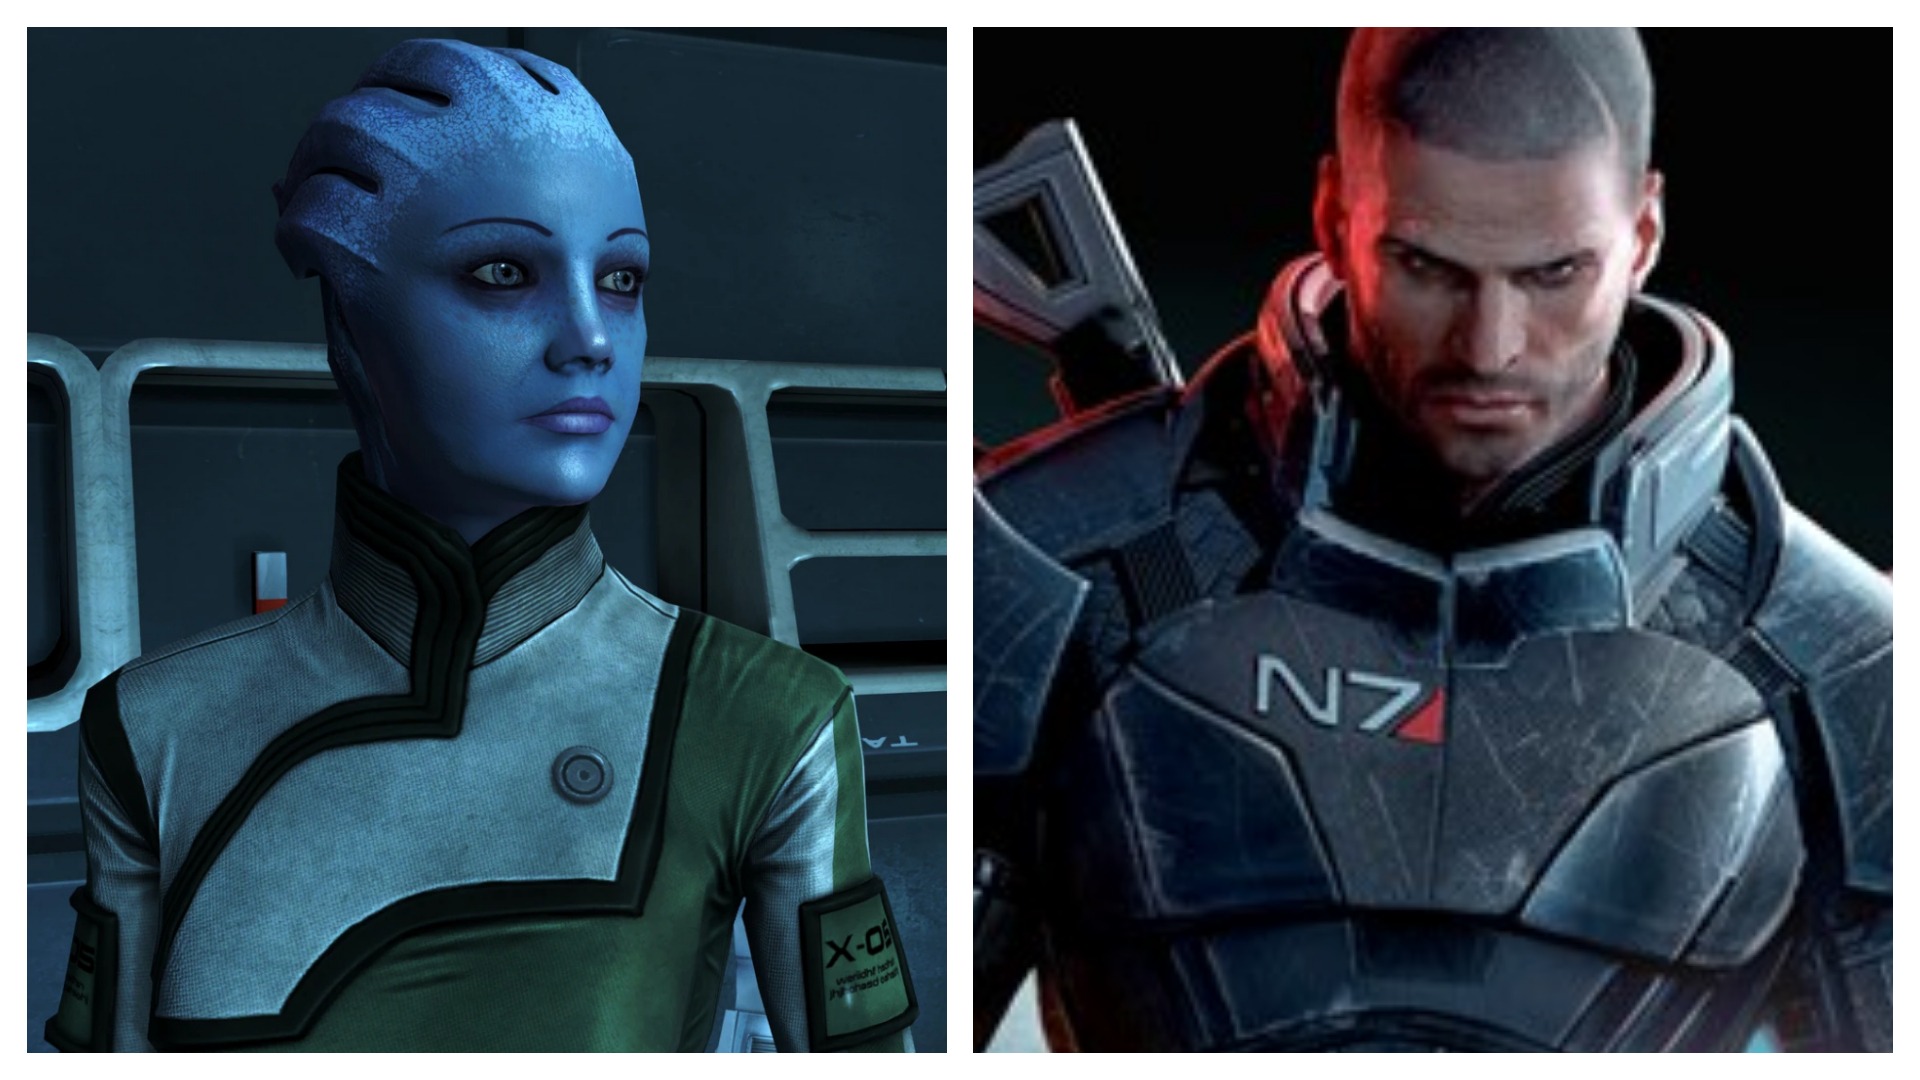 Montagem coloca Liara e Shepard, personagens de Mass Effect, lado a lado